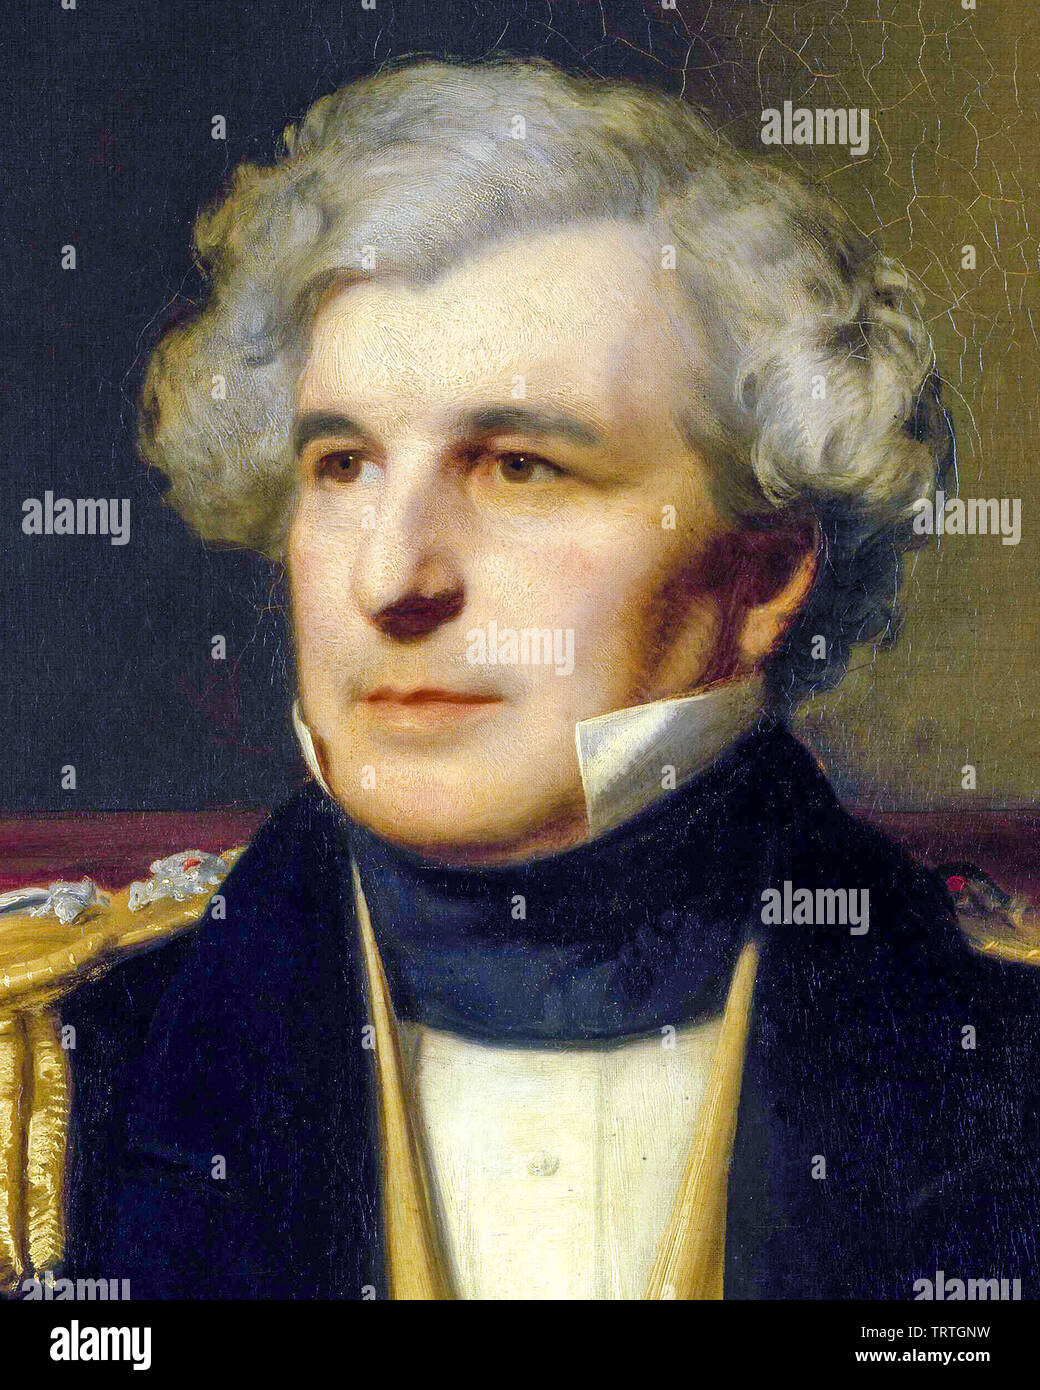 Le Capitaine James Clark Ross, 1800-1862, portrait peinture (détail), 1871 Banque D'Images